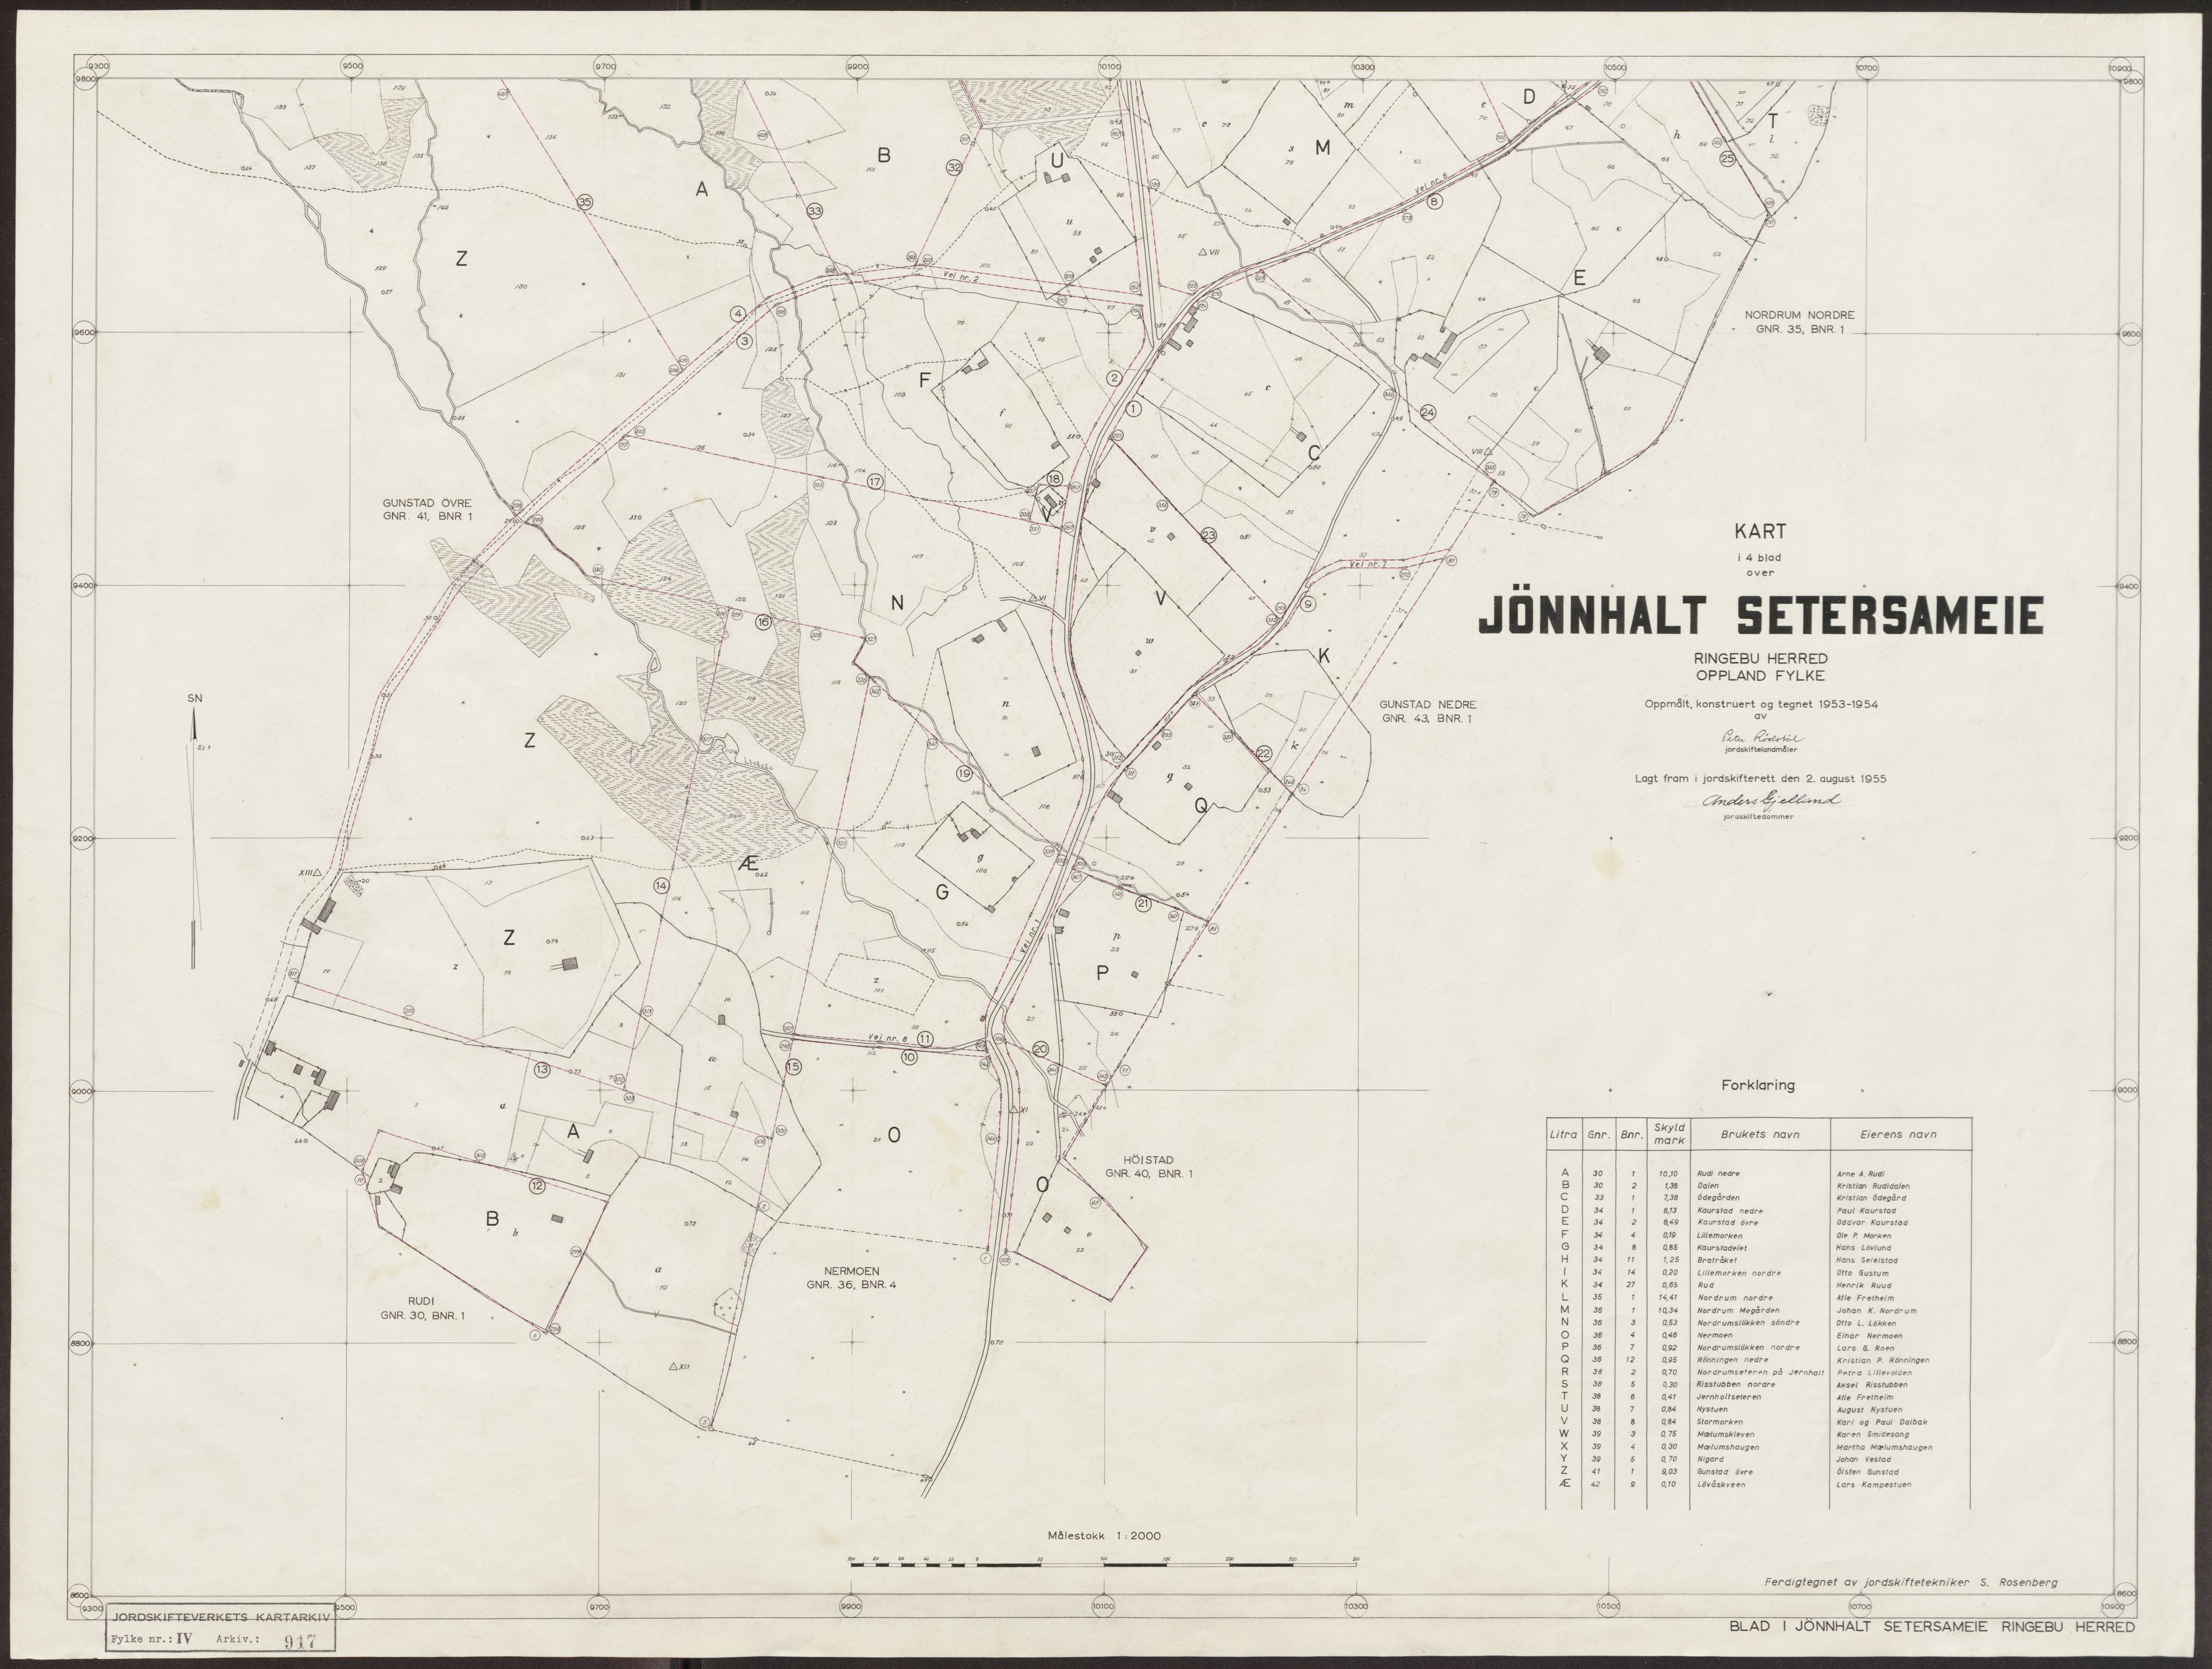 Jordskifteverkets kartarkiv, RA/S-3929/T, 1859-1988, s. 1144